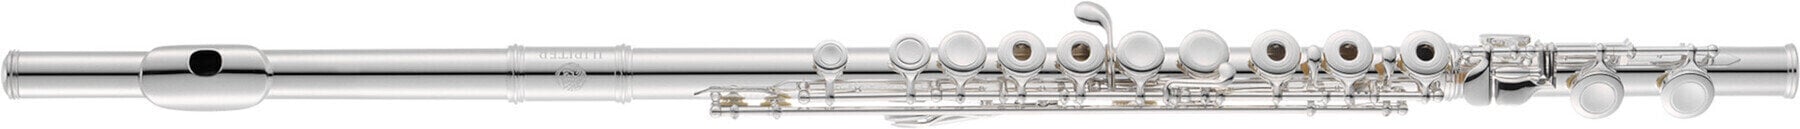 Concert flute Jupiter JFL700R Concert flute